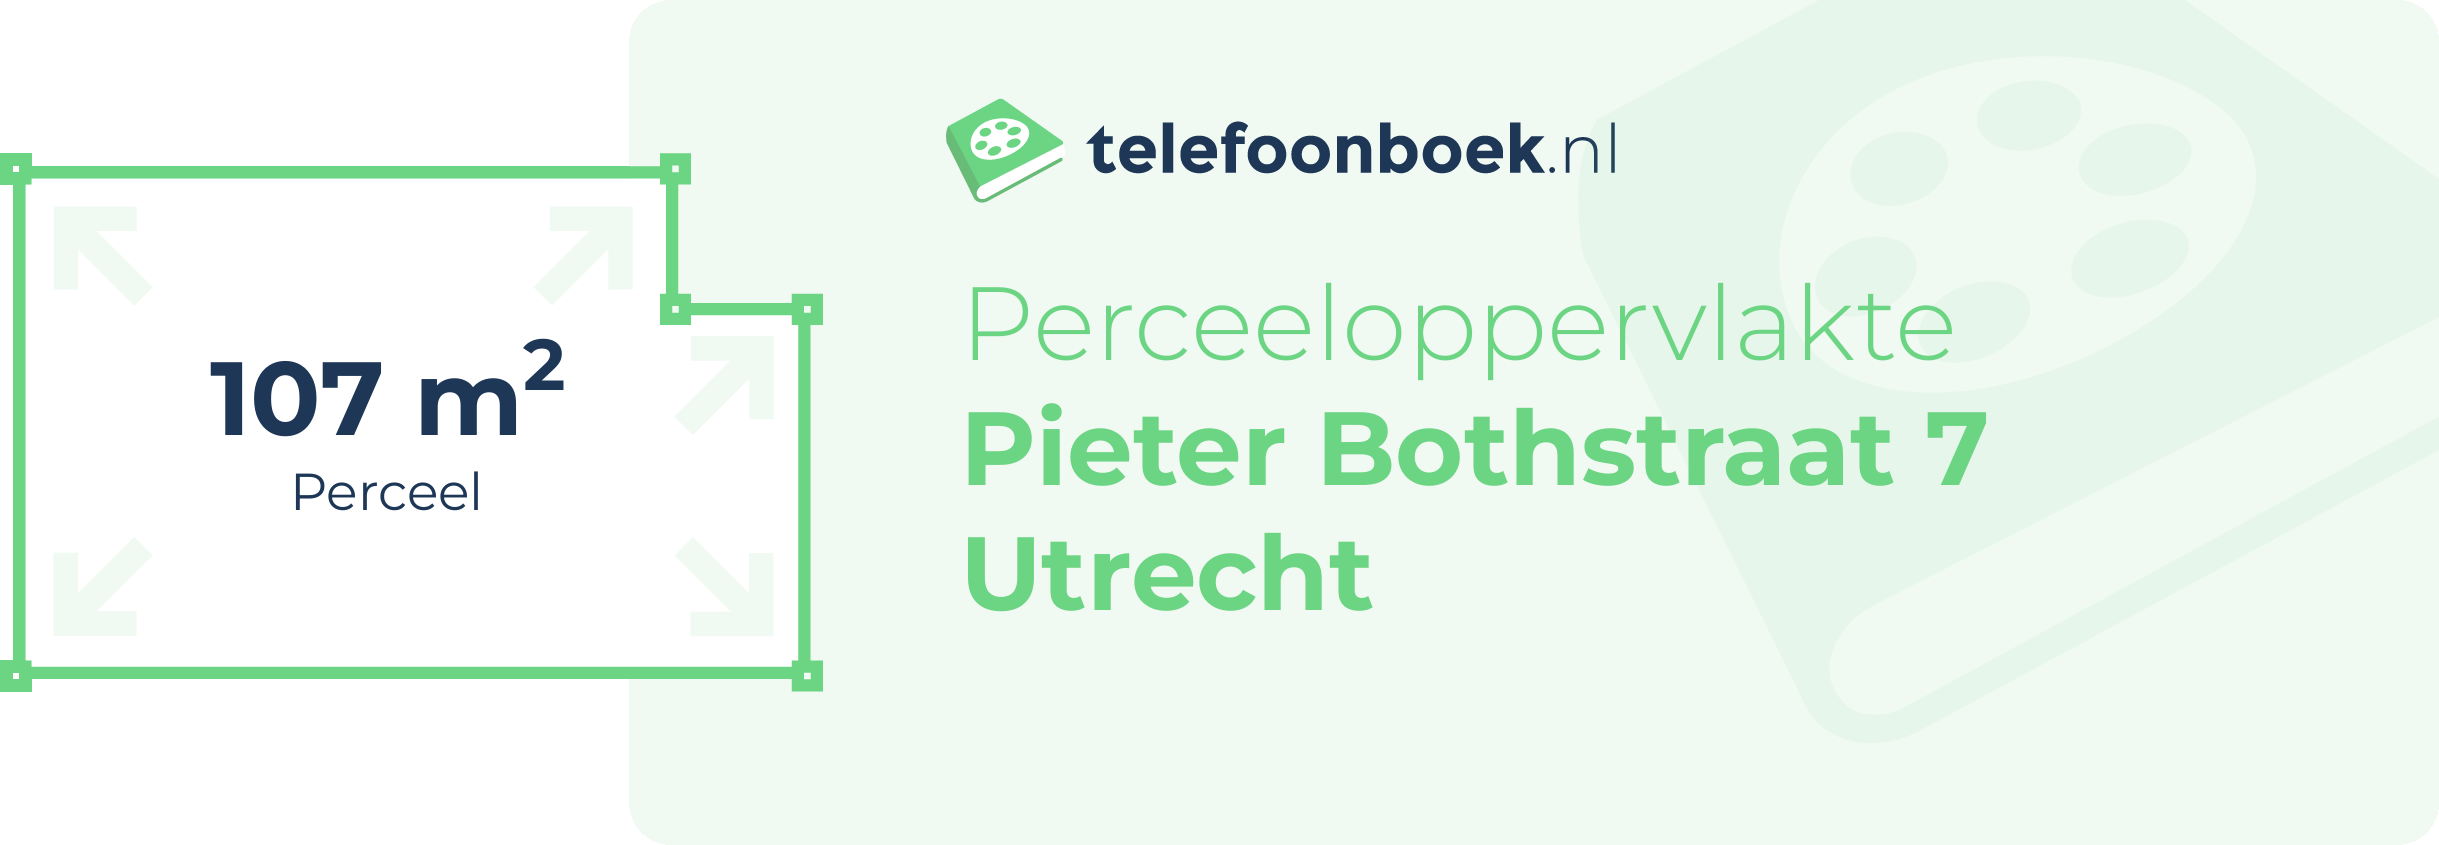 Perceeloppervlakte Pieter Bothstraat 7 Utrecht